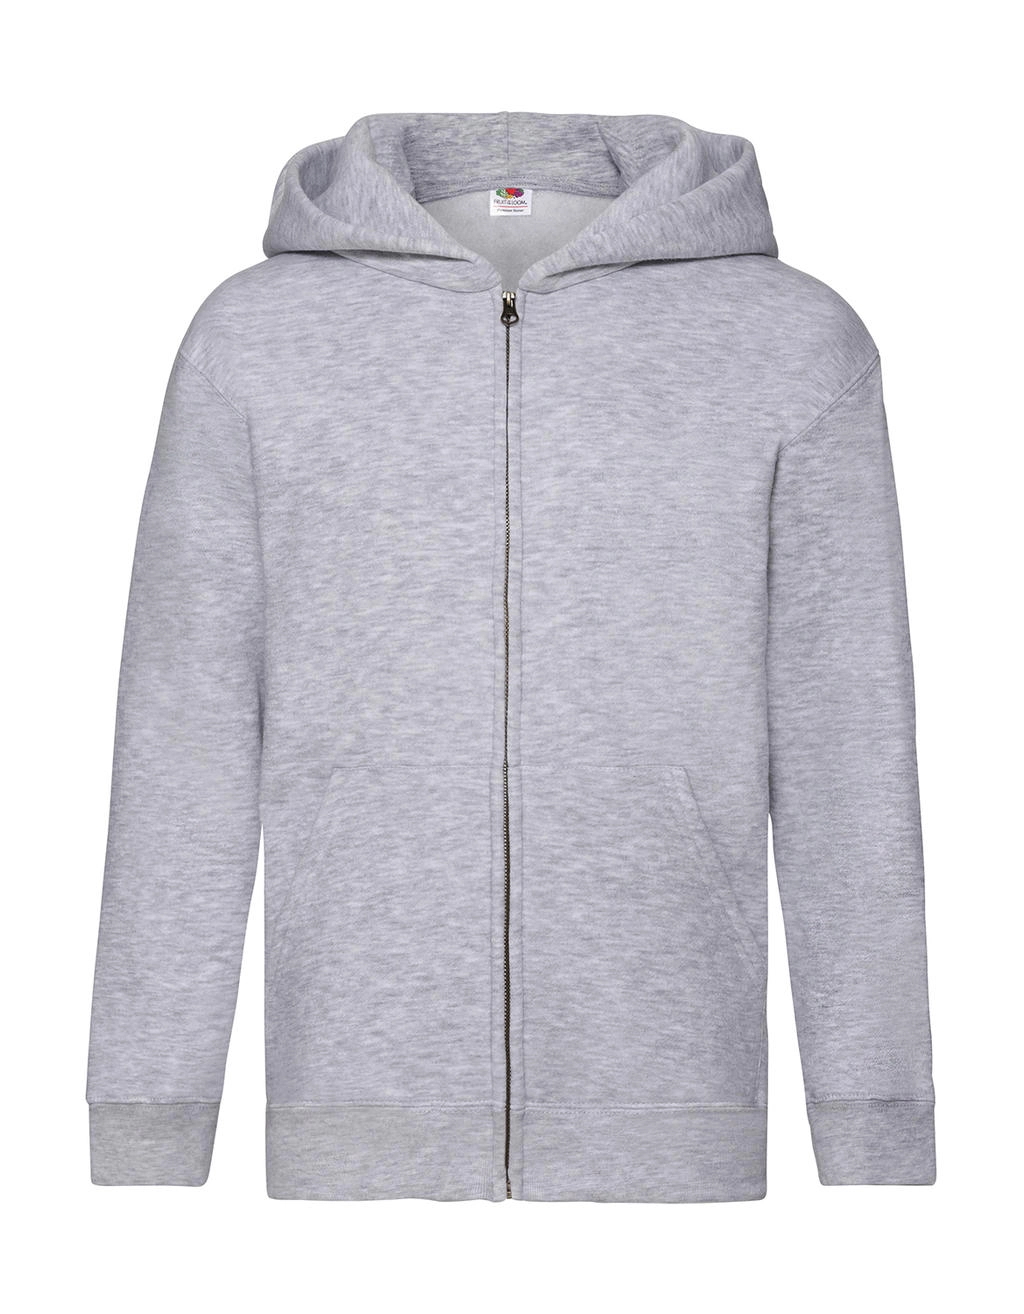 Kids` Premium Hooded Sweat Jacket zum Besticken und Bedrucken in der Farbe Heather Grey mit Ihren Logo, Schriftzug oder Motiv.